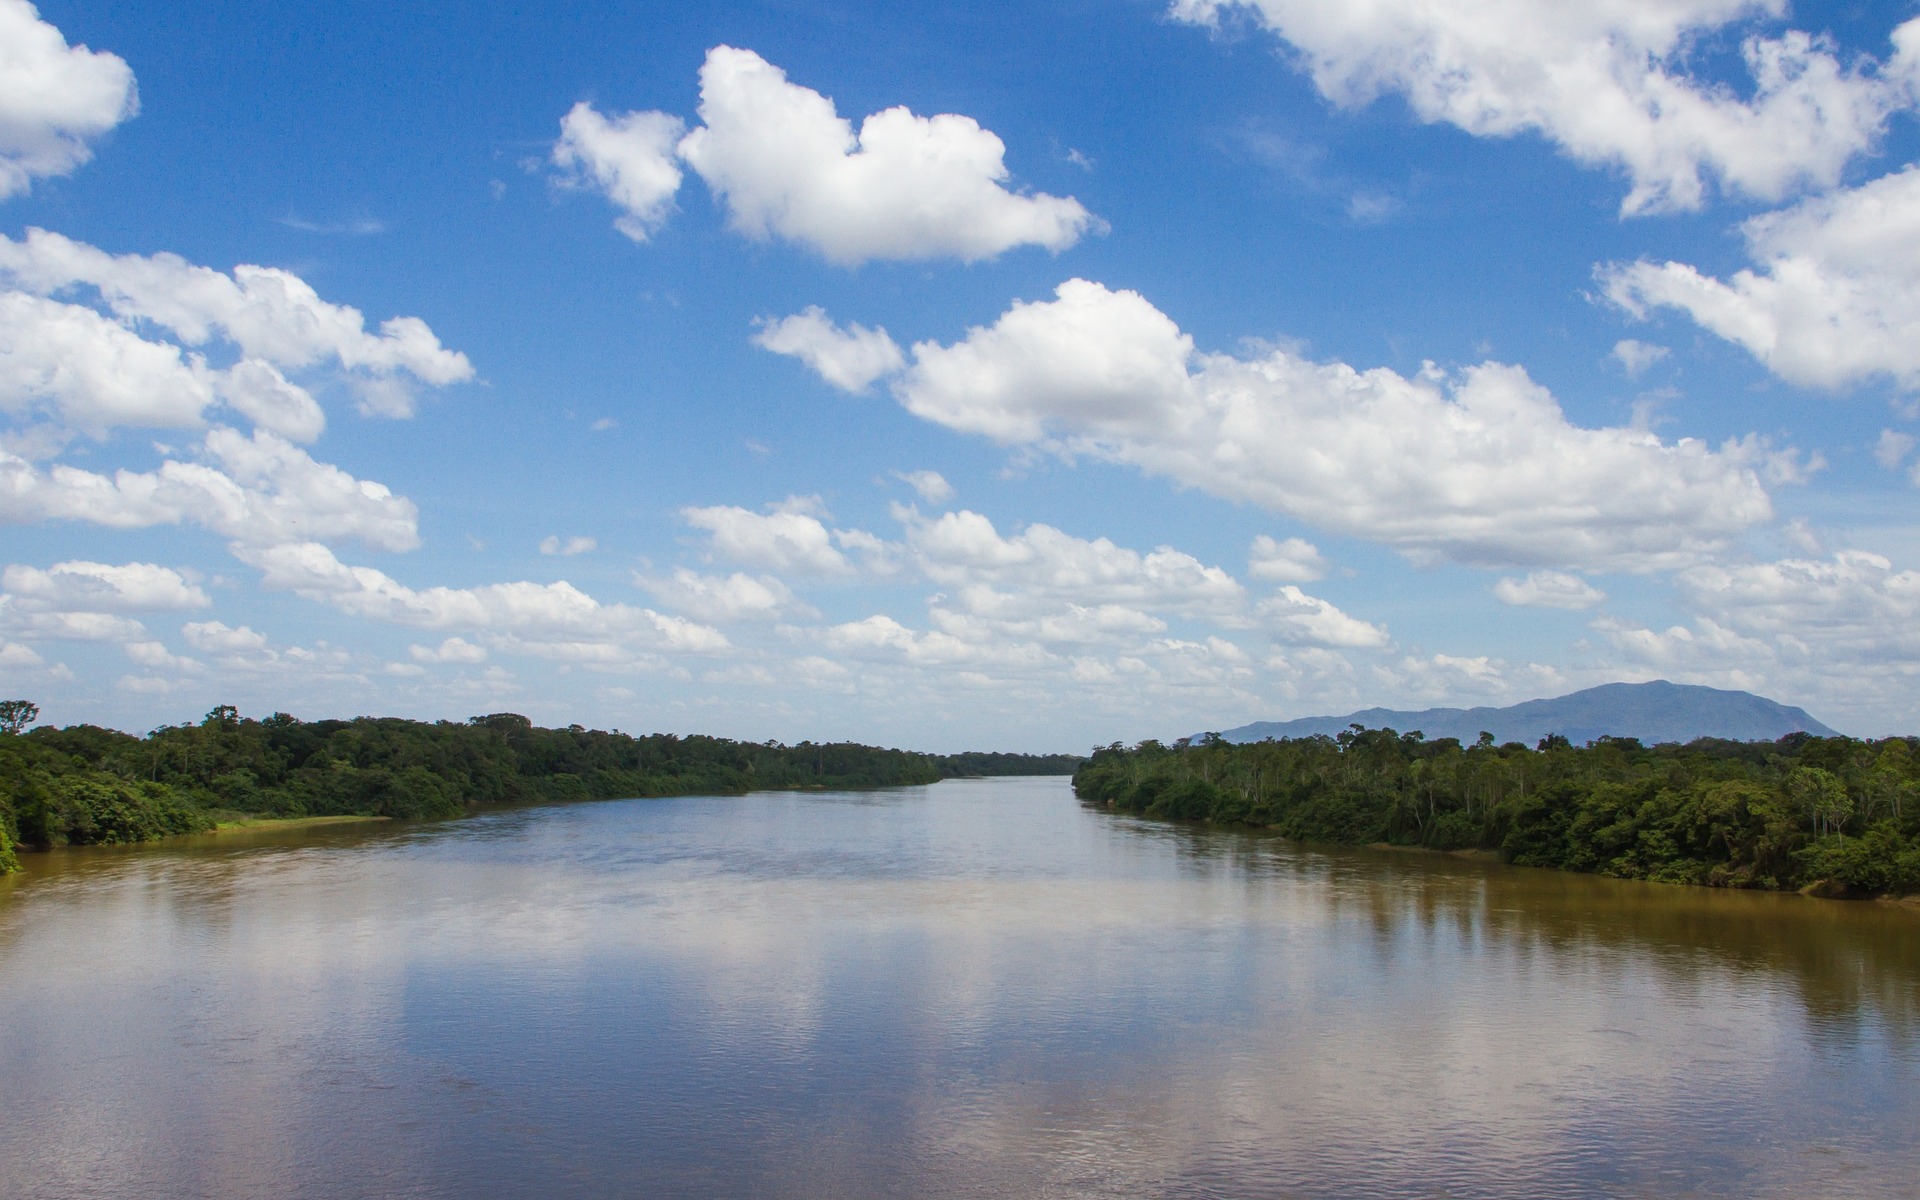 Productos farmacéuticos amenazan ríos, en especial en mundo en desarrollo